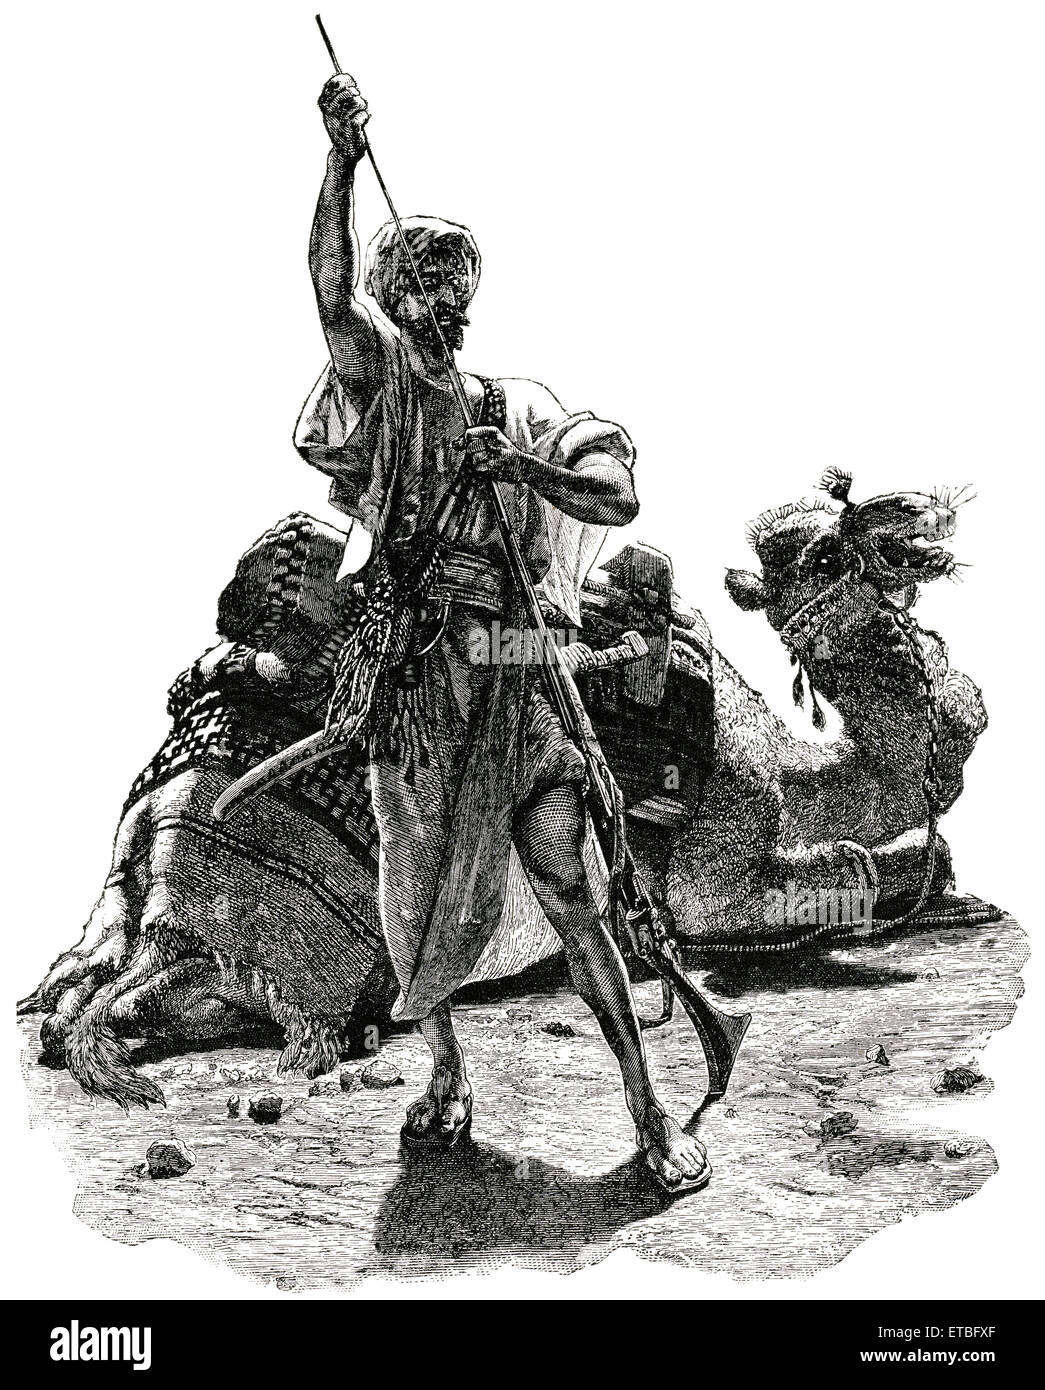 Uomo Arabo nel deserto si prepara a incontrare avvicinando Foe, Arabia, 'Classico portafoglio di vettori primitivi', da Marshall M. Kirman, ferroviarie del mondo Publ. Co., illustrazione, 1895 Foto Stock